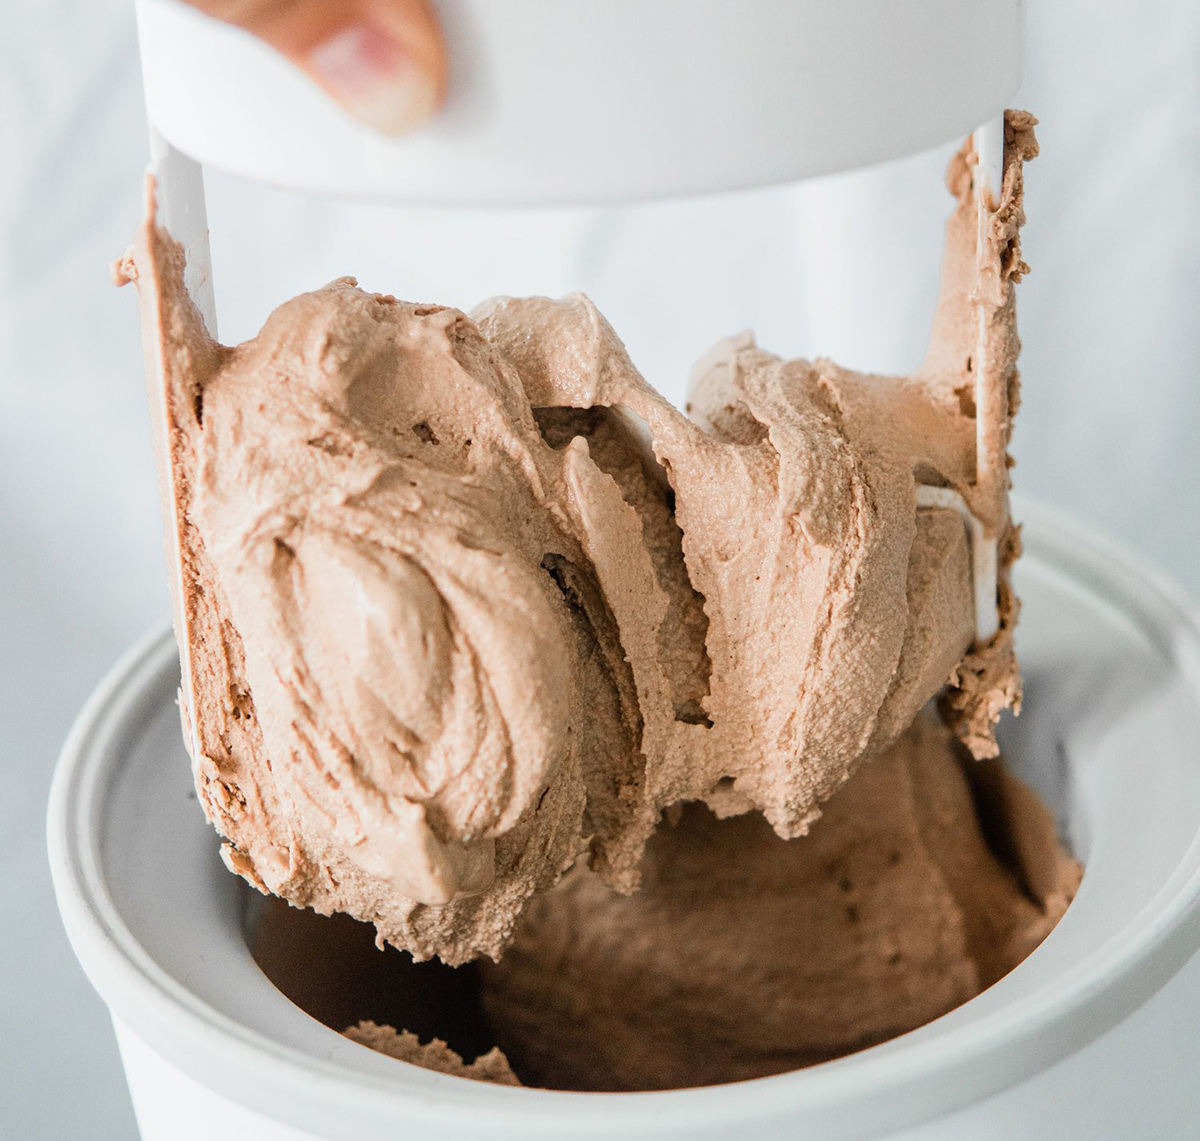 Keto vegan chocolate ice cream from Sarah Tribett